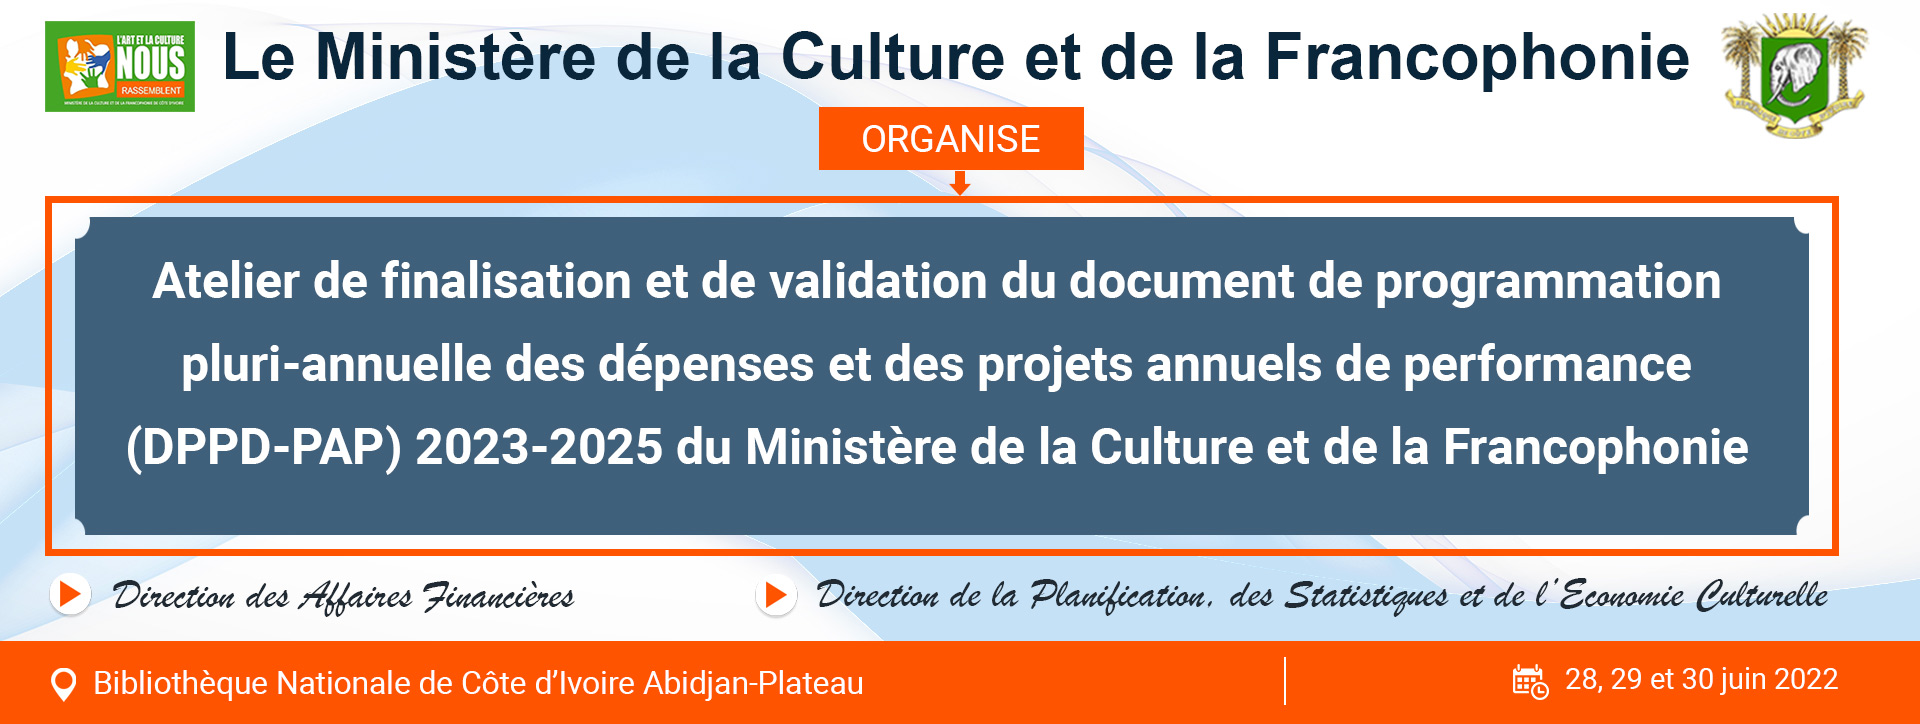 Atelier de finalisation et de validation du document de programmation pluri-annuelle des dépenses et des projets annuels de performance (dppd-pap) 2023-2025 du Ministère de la Culture et de la Francophonie